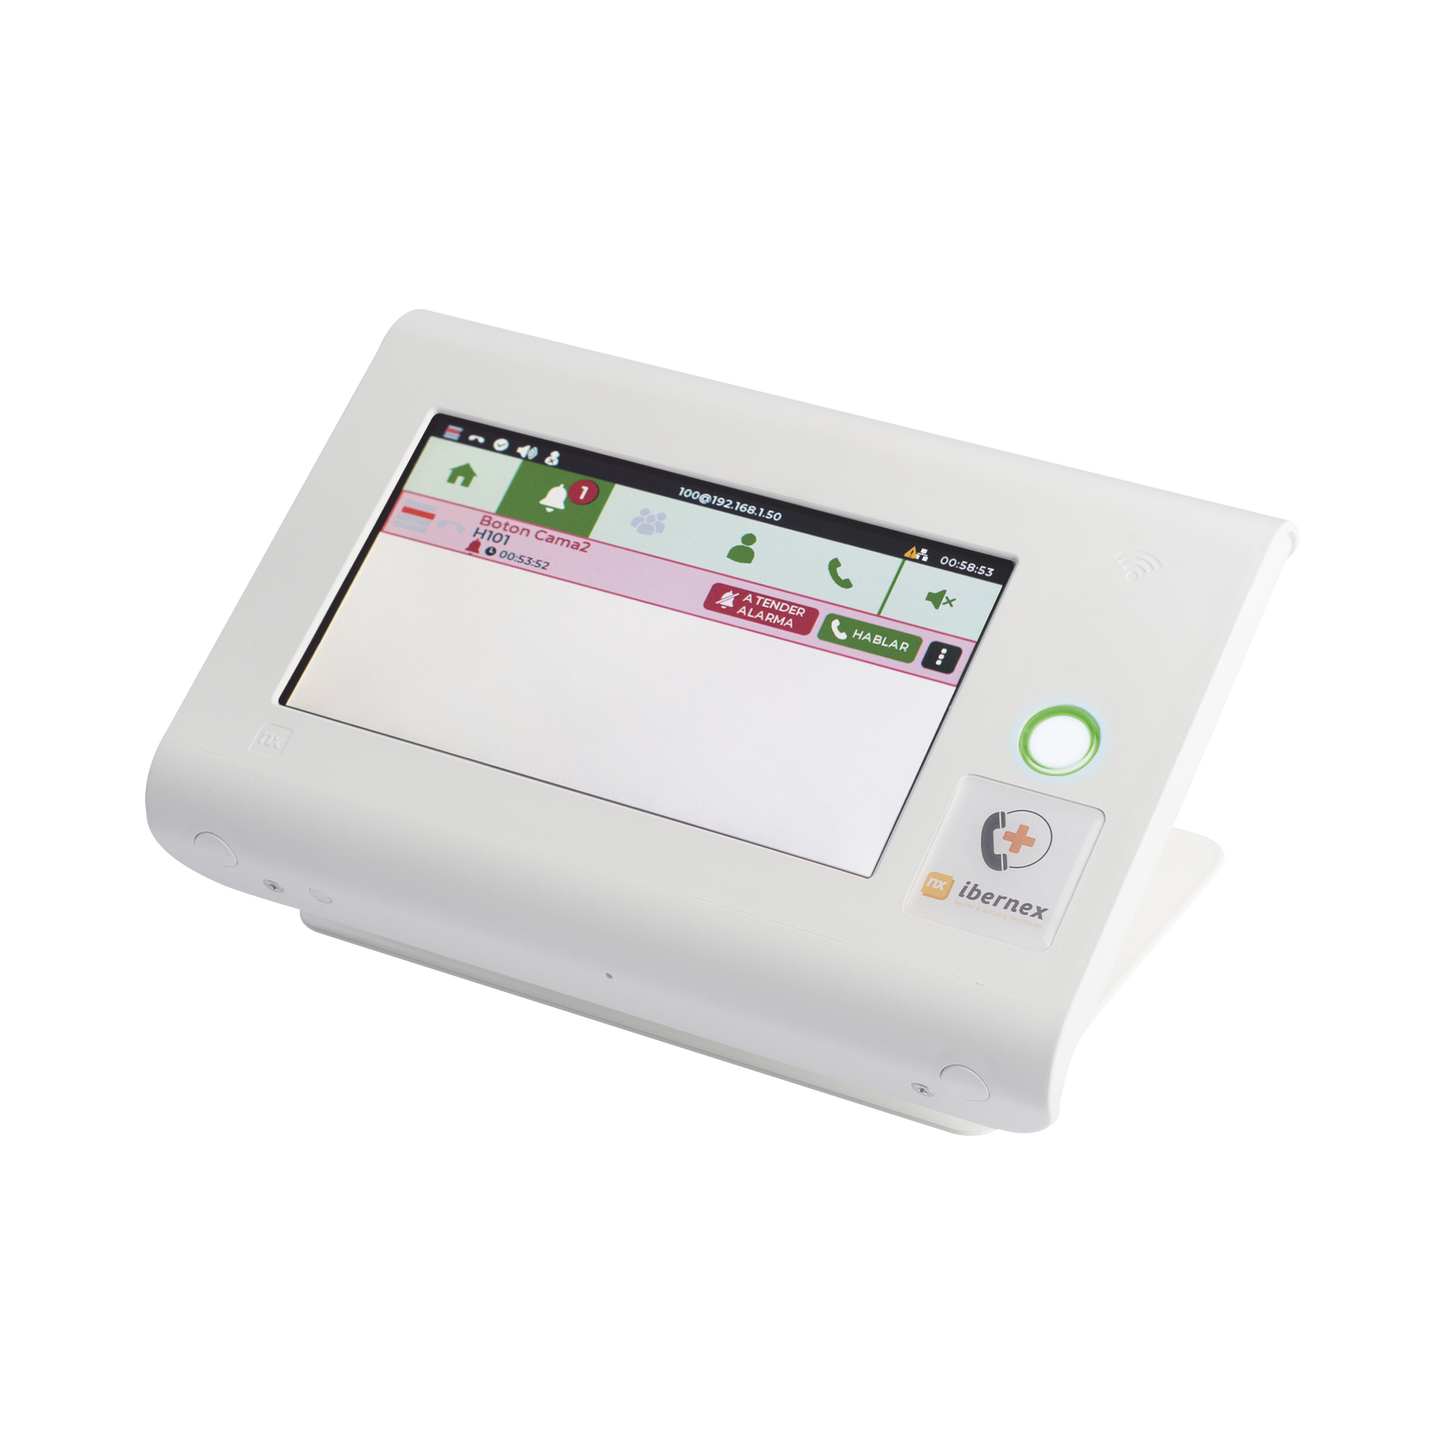 Consola de Sobremesa para Puesto de Control de Enfermería / Pantalla Táctil 7" / PoE / SIP / RFID / Compatible con NX0019/B, NX1021 y NX0015